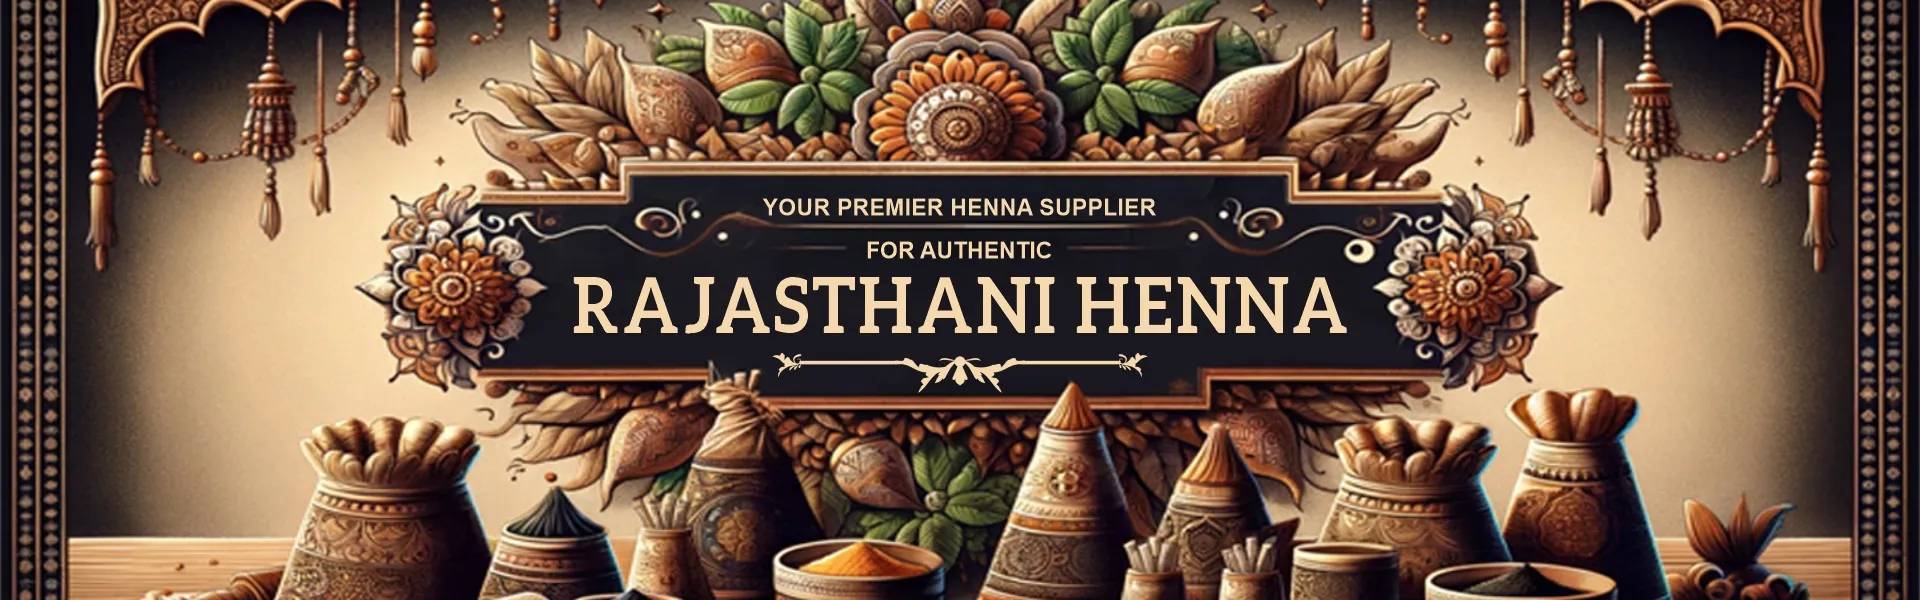 Henna Supplier for Rajasthani Henna - www.dkihenna.com